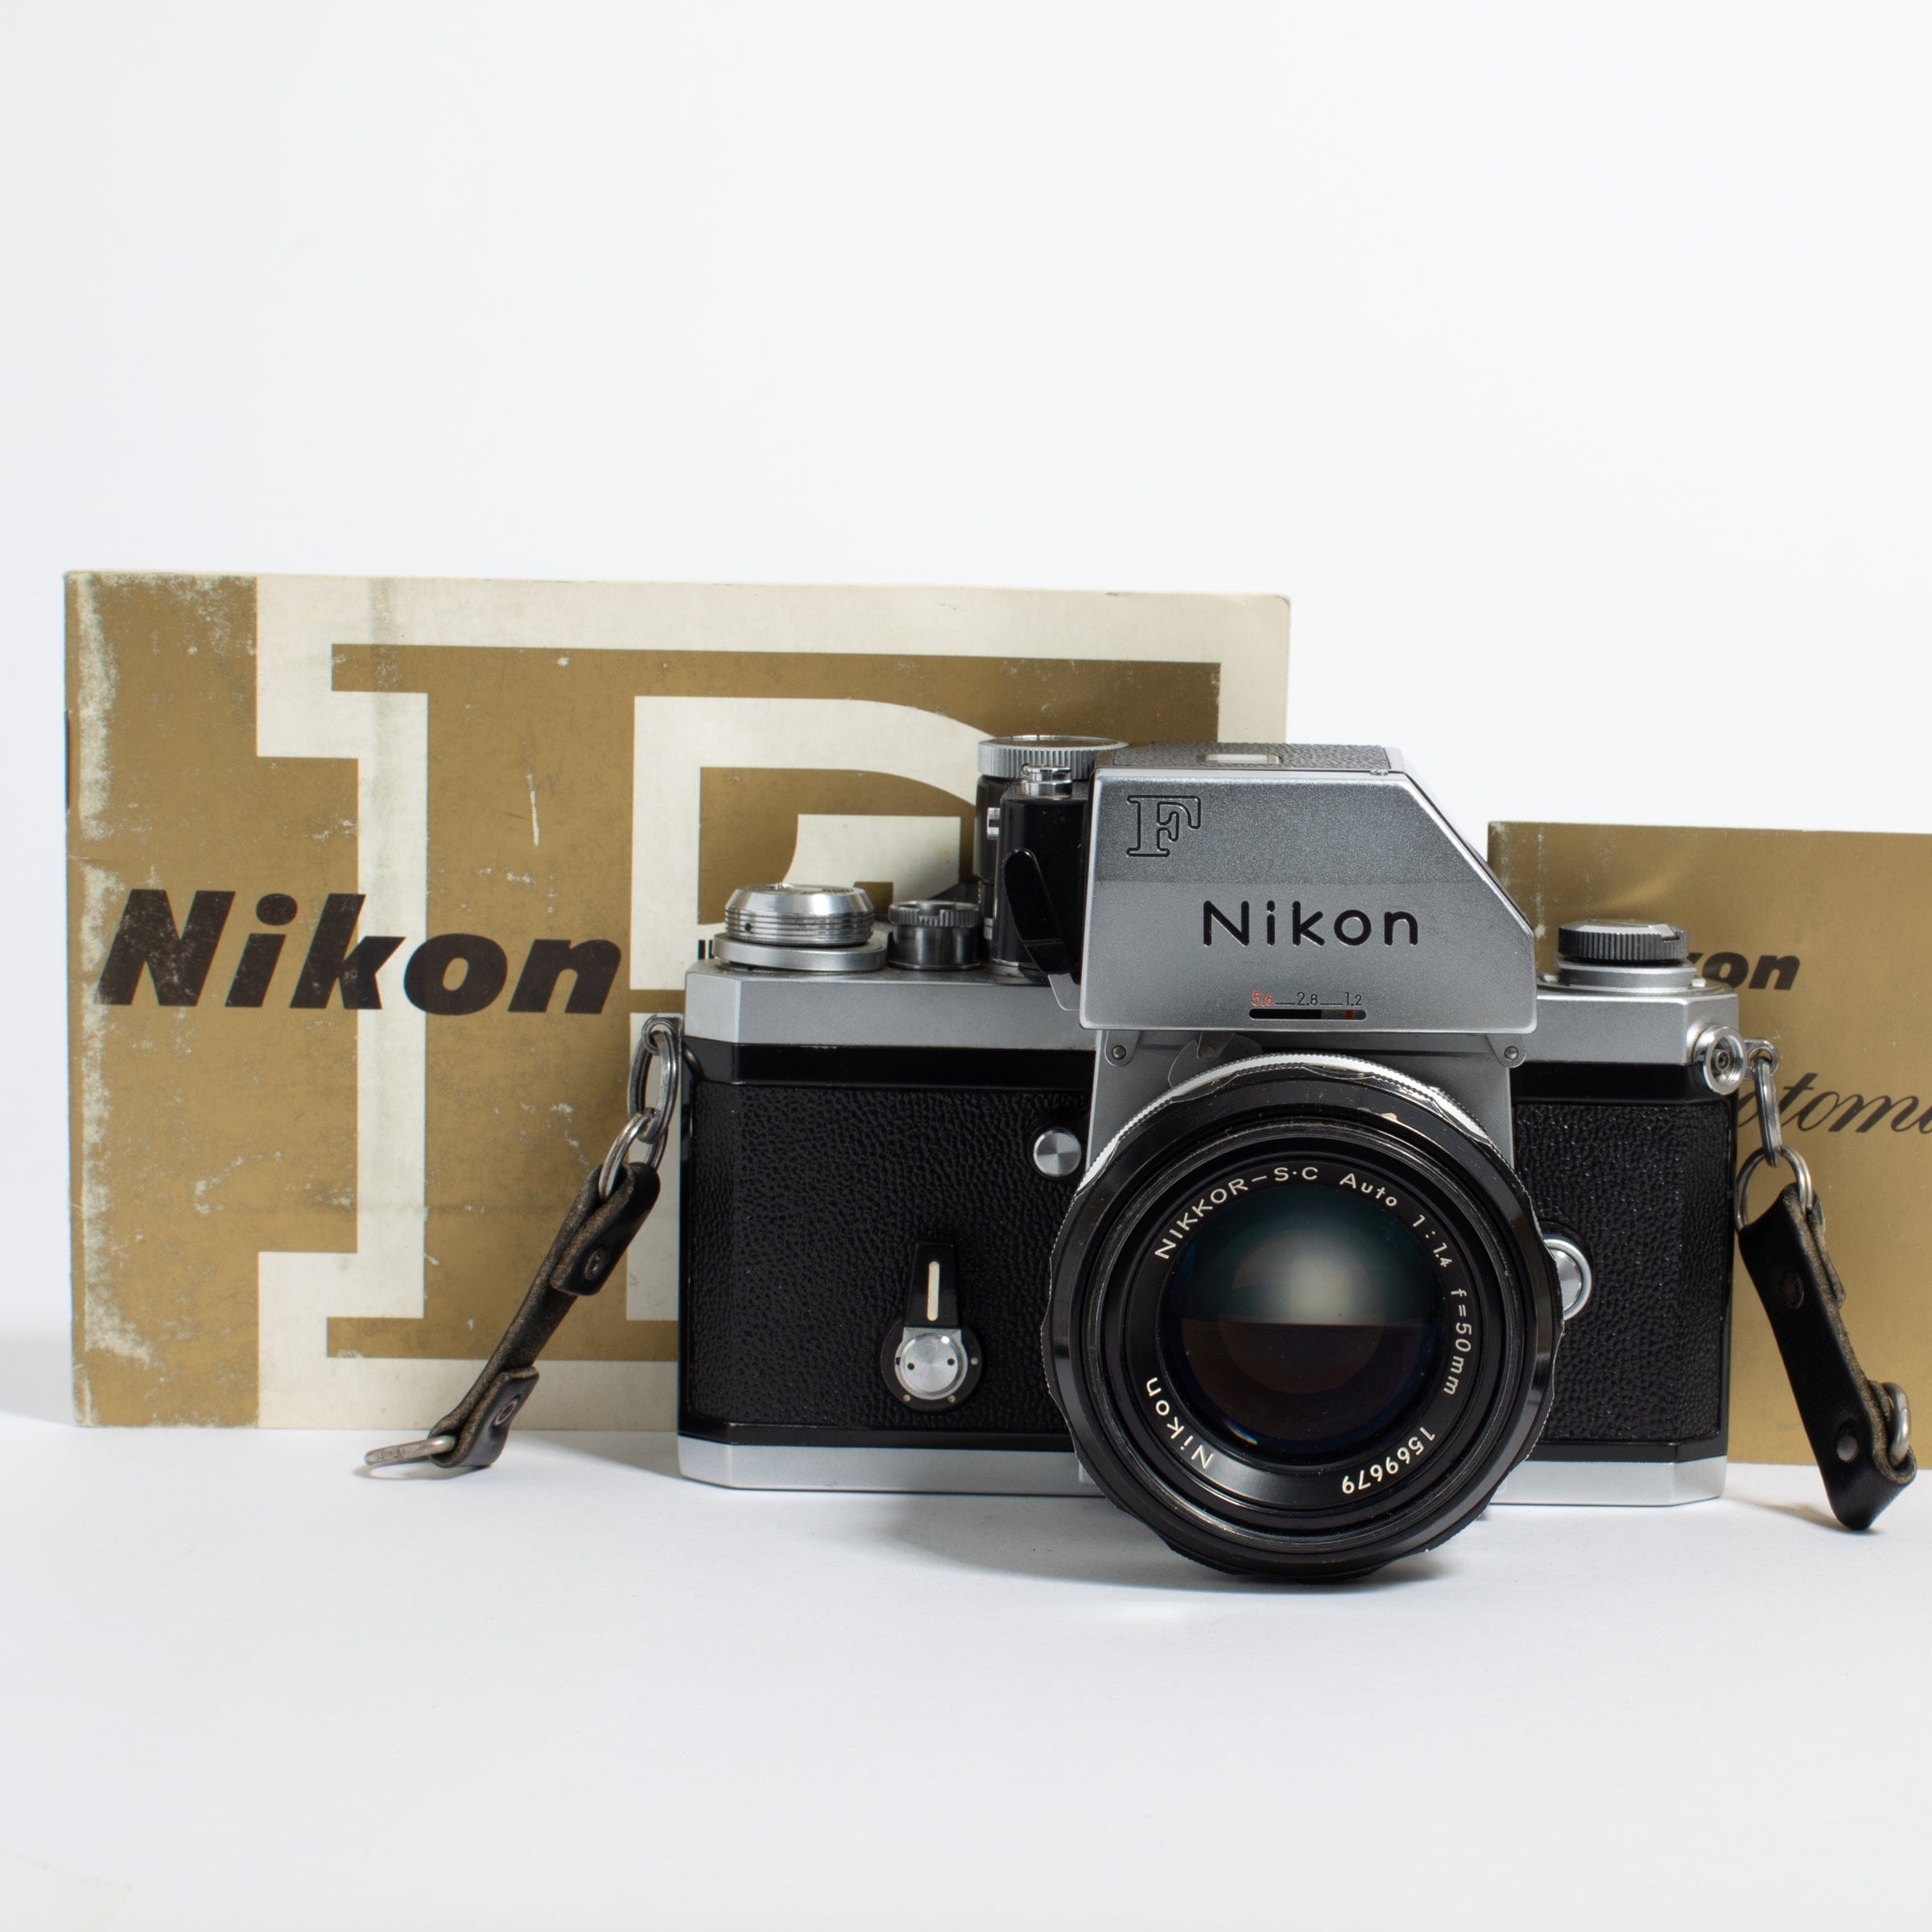 ニコン Nikon Photomic FTN 35mm SLR フィルムカメラ #2154 - カメラ ...